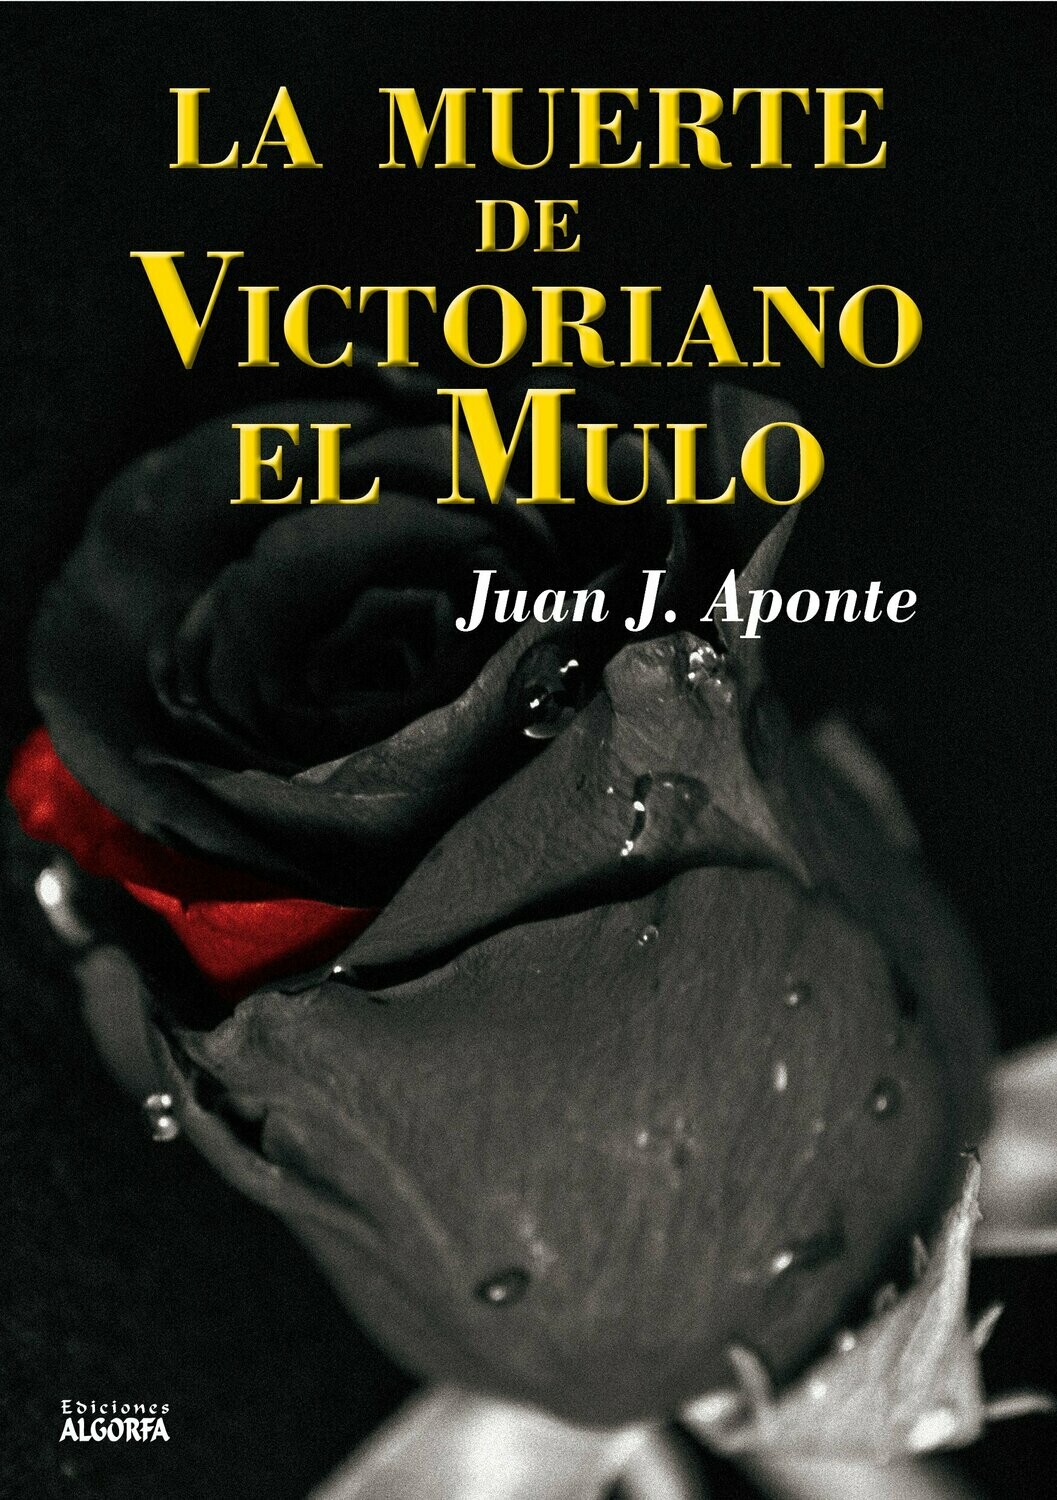 LA MUERTE DE VICTORIANO EL MULO. Juan J. Aponte